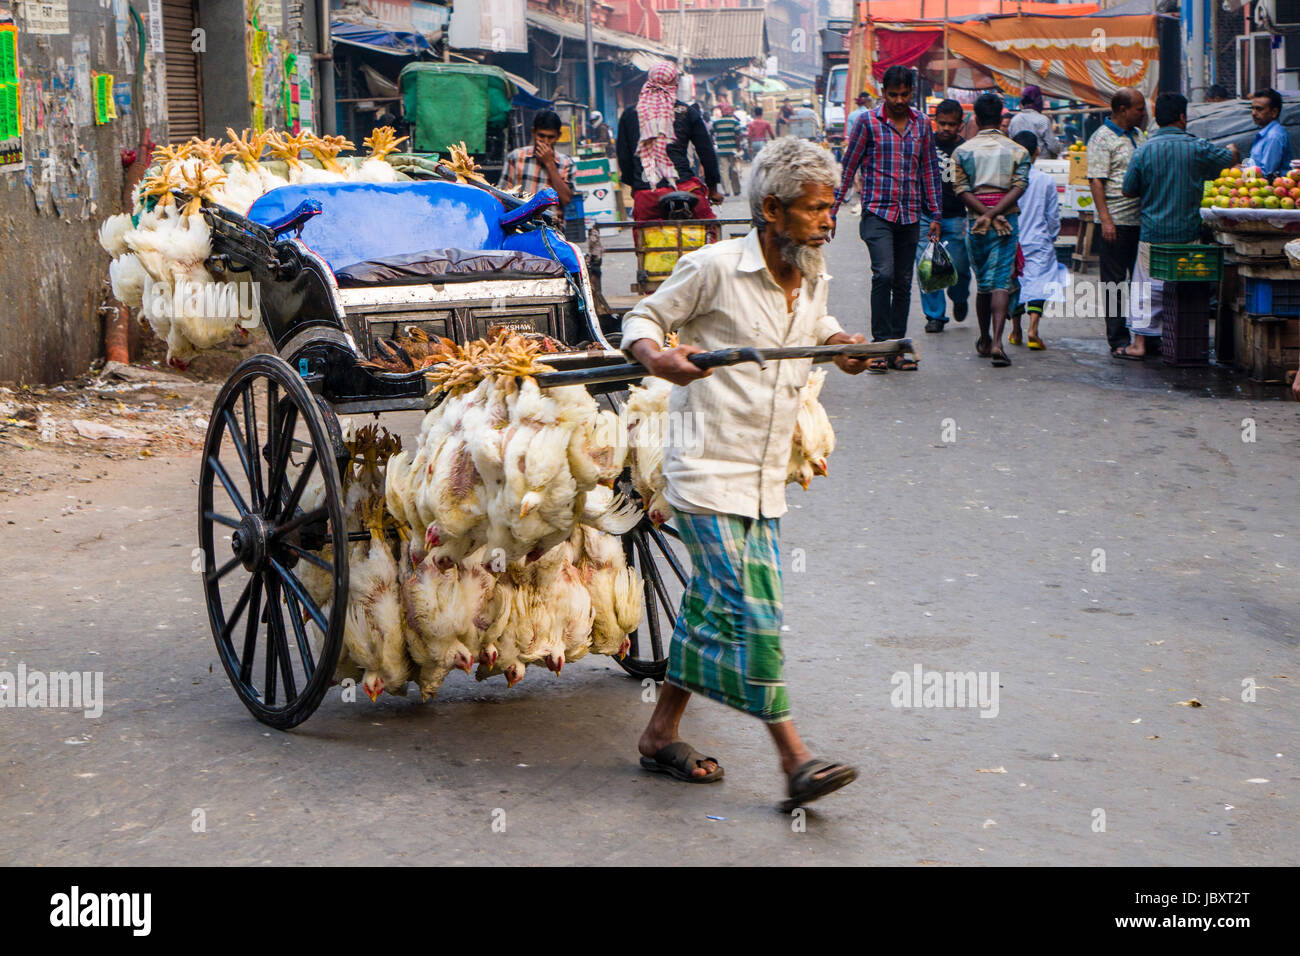 Huhn sind miteinander verbunden und durch Ziehen der Rikscha in der Vorstadt neuer Markt transportiert Stockfoto